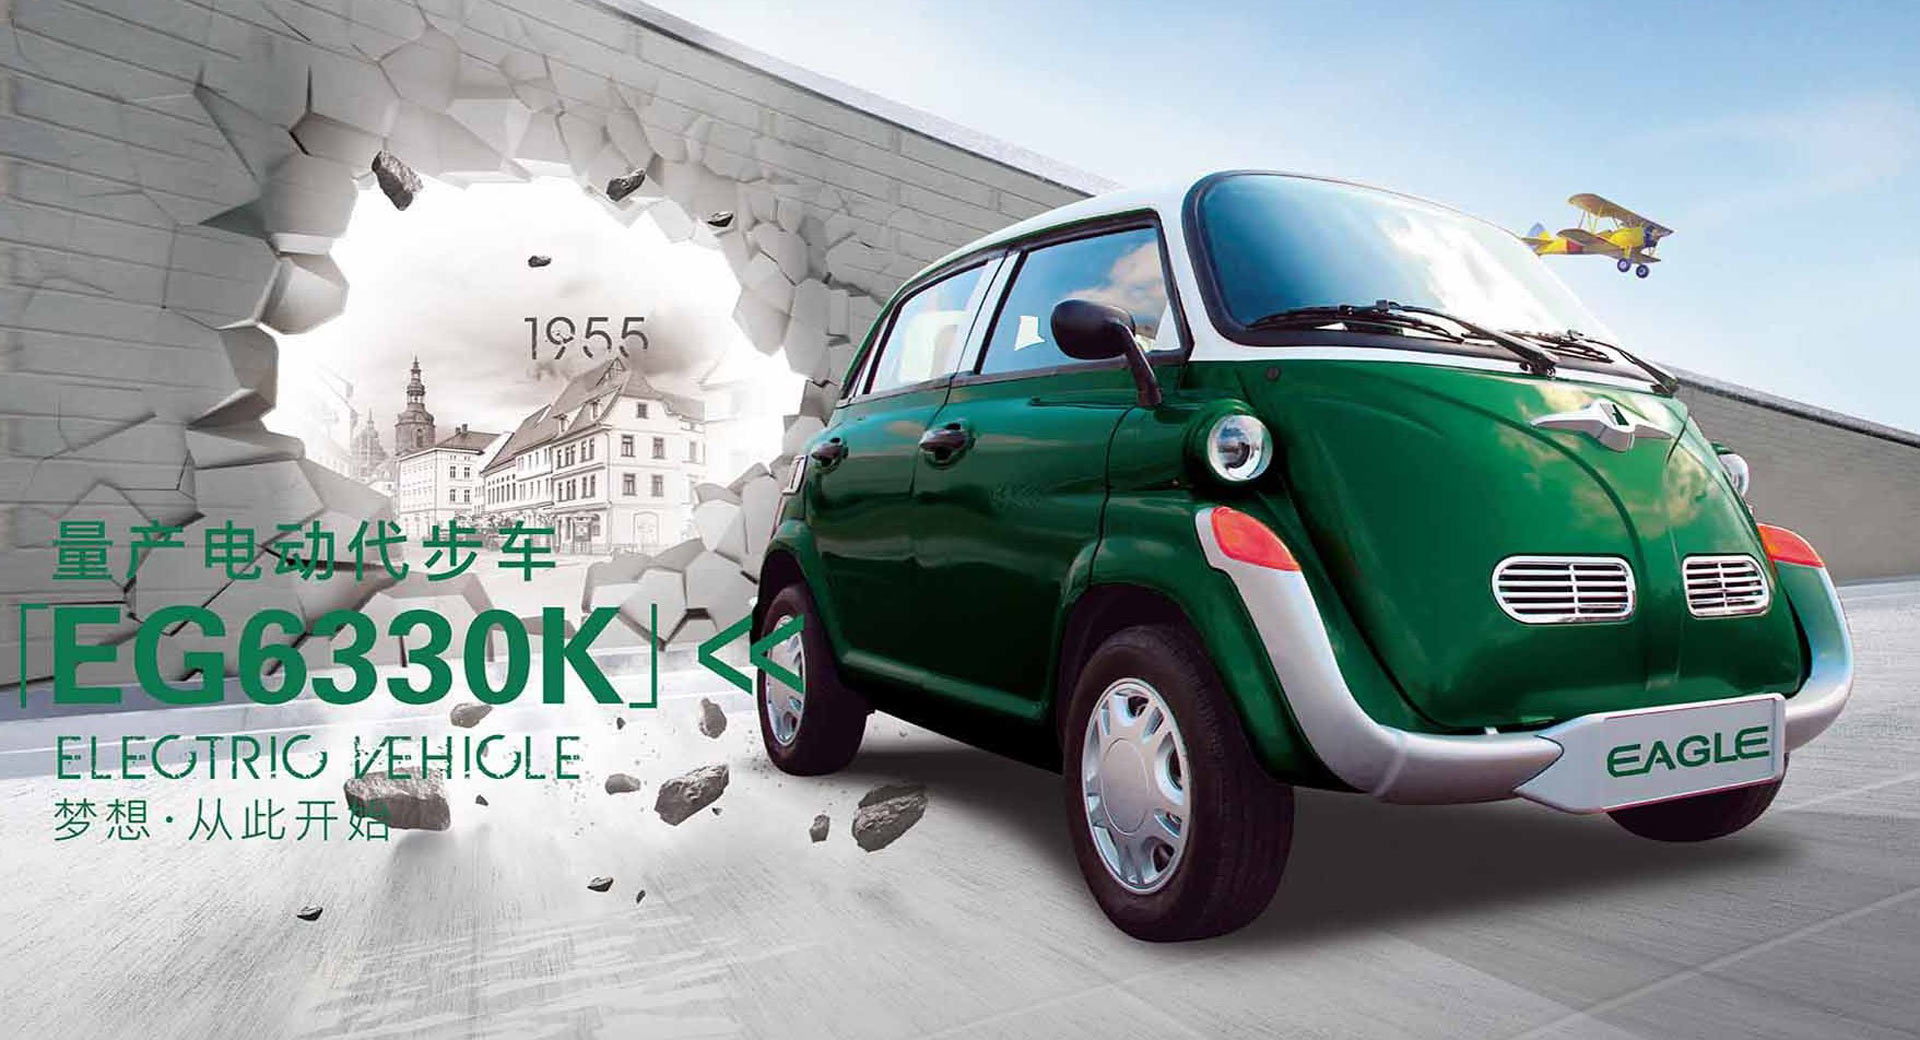 "بالصور" شركة سيارات صينية صنعت بي إم دبليو إيسيتا مقلّدة 1